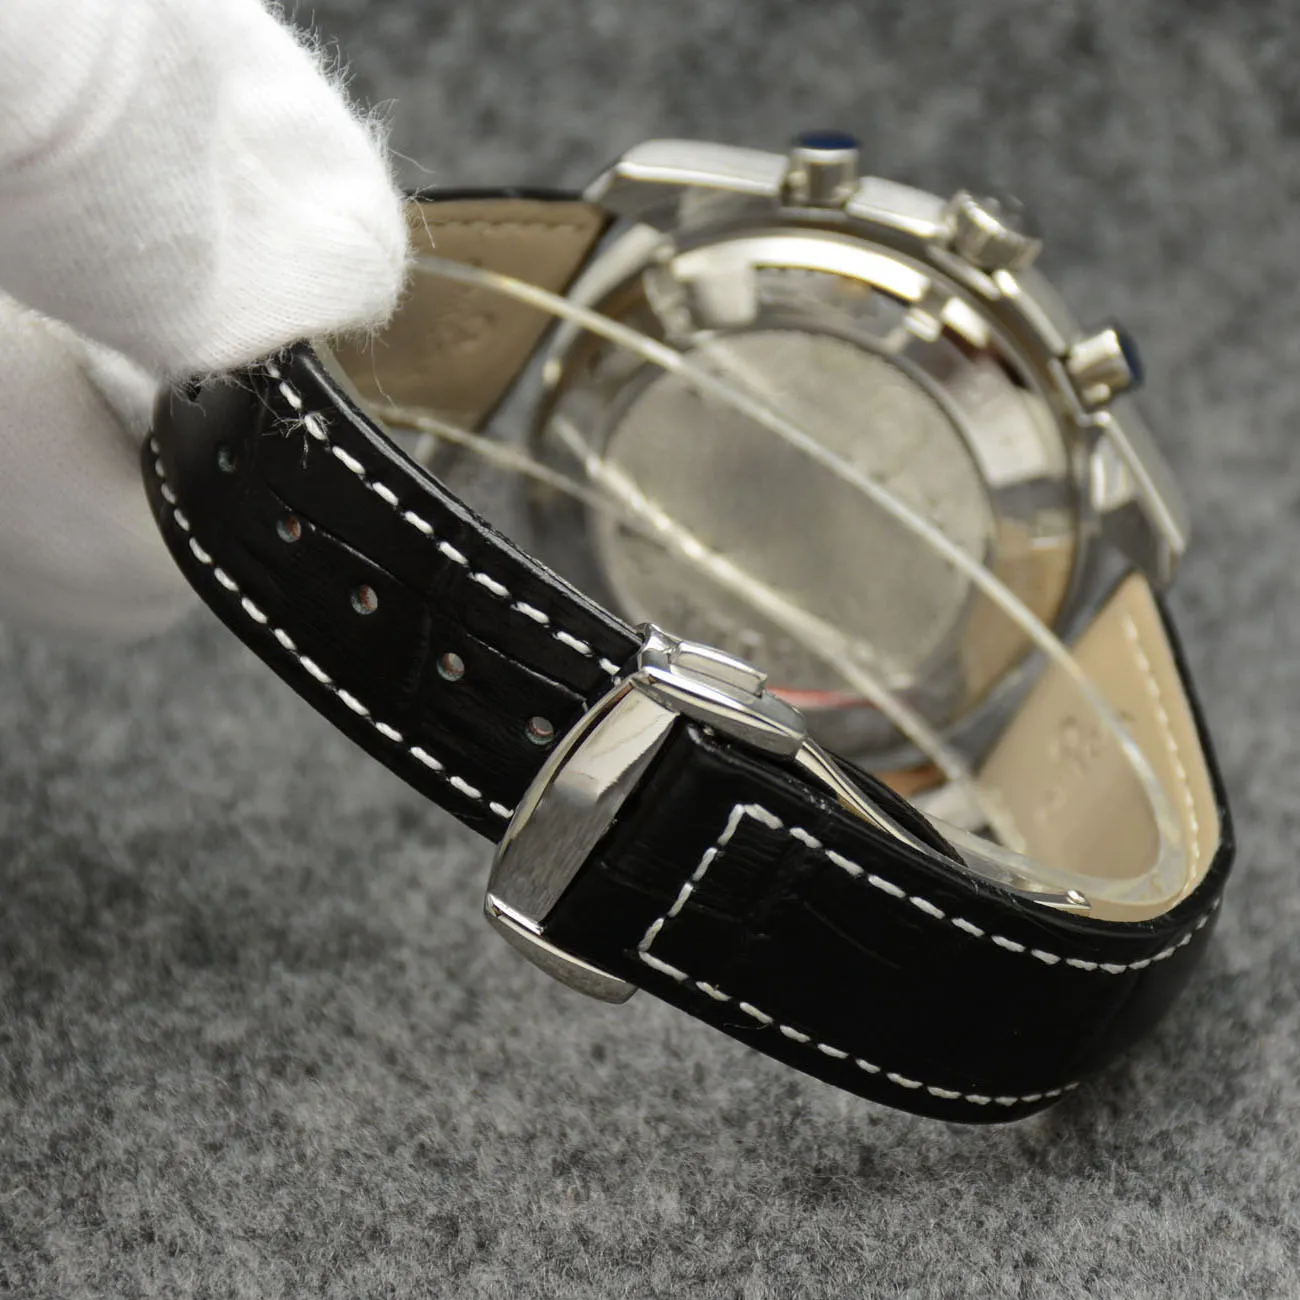 44 mm quartz chronograaf datum herenhorloges rode wijzers zwarte lederen band vaste lunette met een bovenste ring met tachymetermarkeringen2772